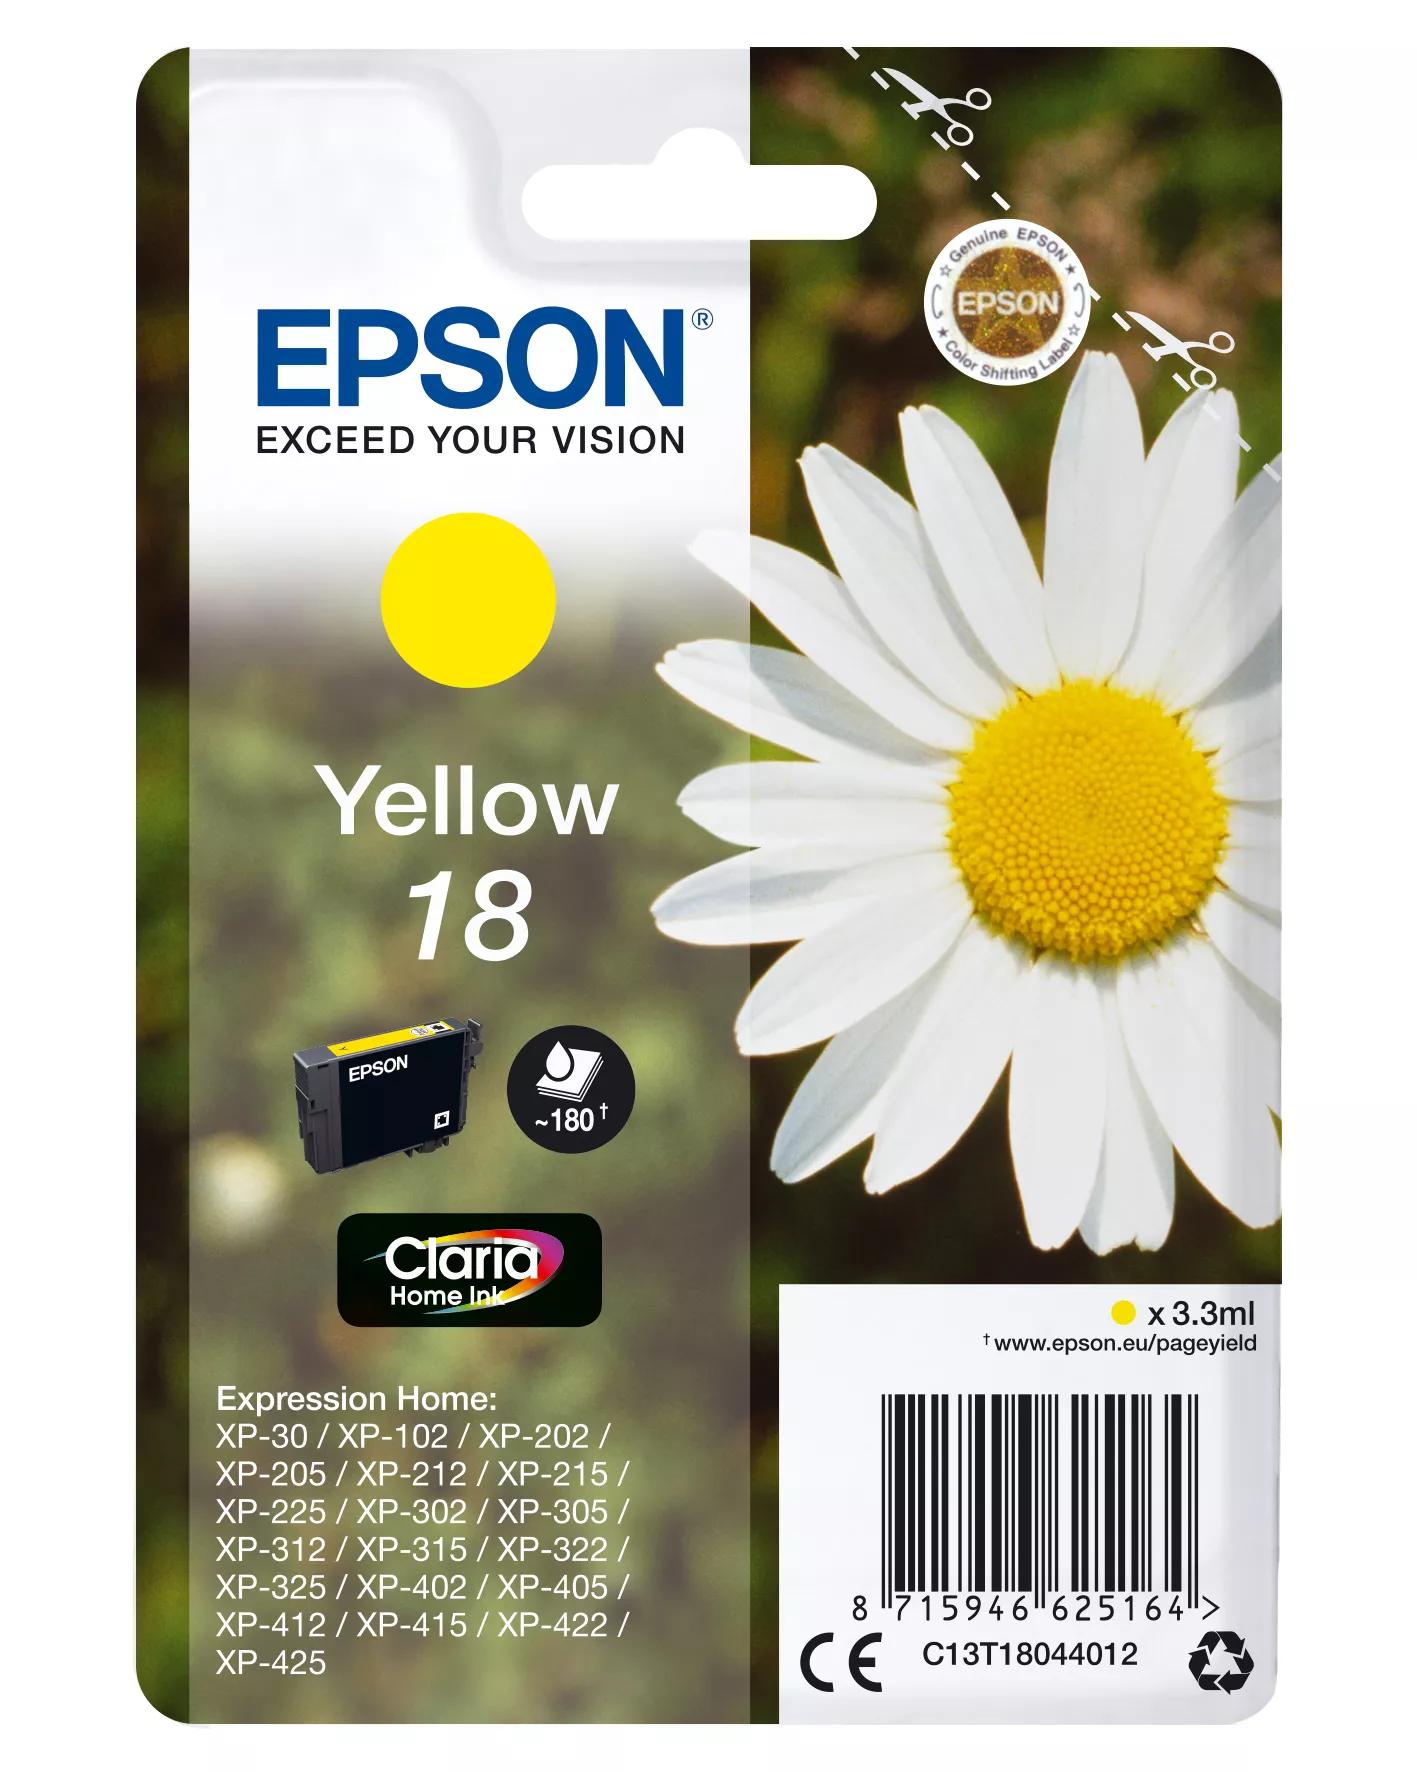 Achat EPSON 18 cartouche dencre jaune capacité standard 3.3ml au meilleur prix